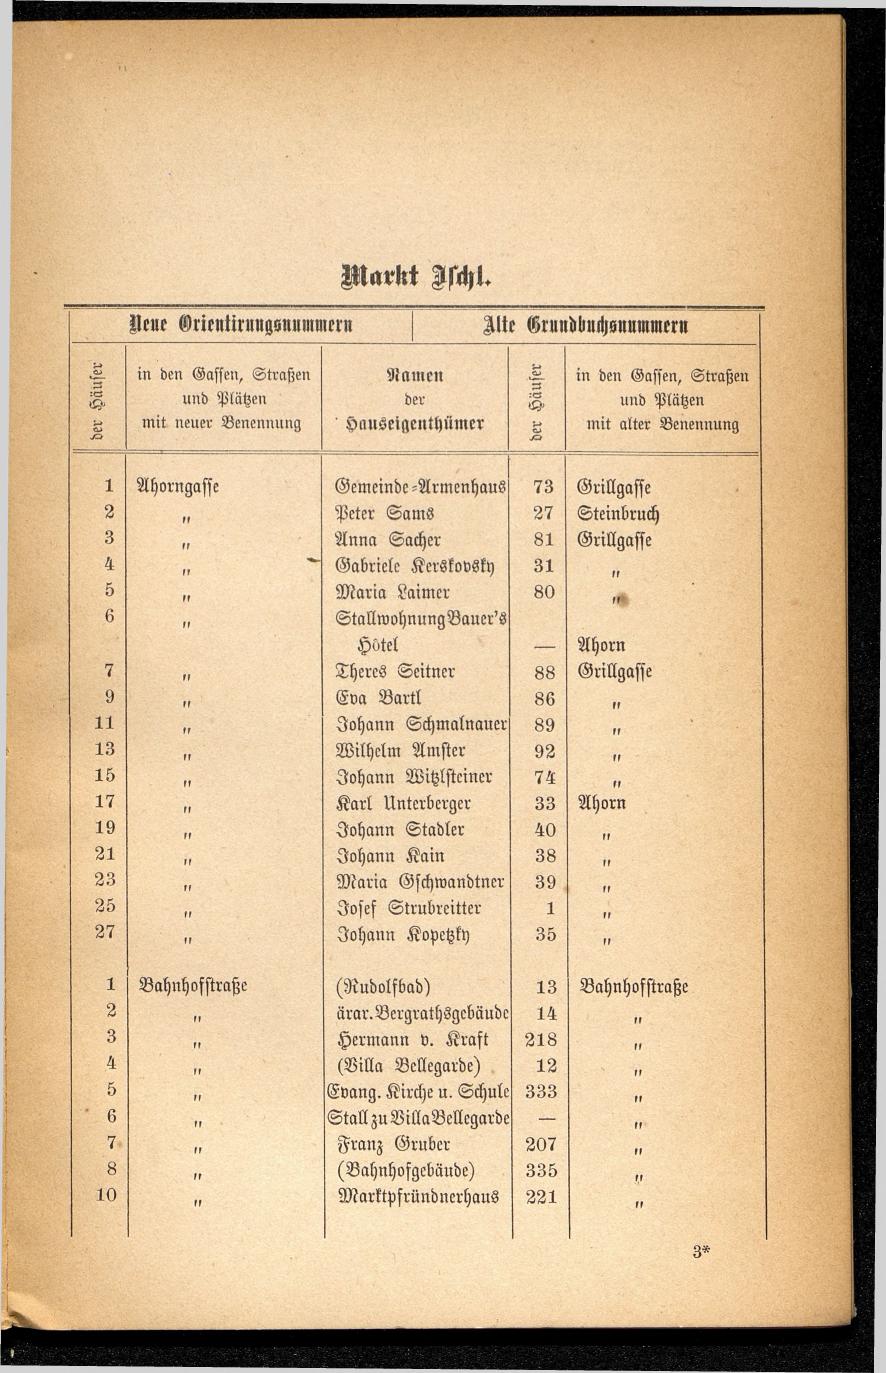 Häuser-Verzeichnis des Marktes und Kurortes Ischl nach den neuen Orientirungsnummern 1881 - Seite 39